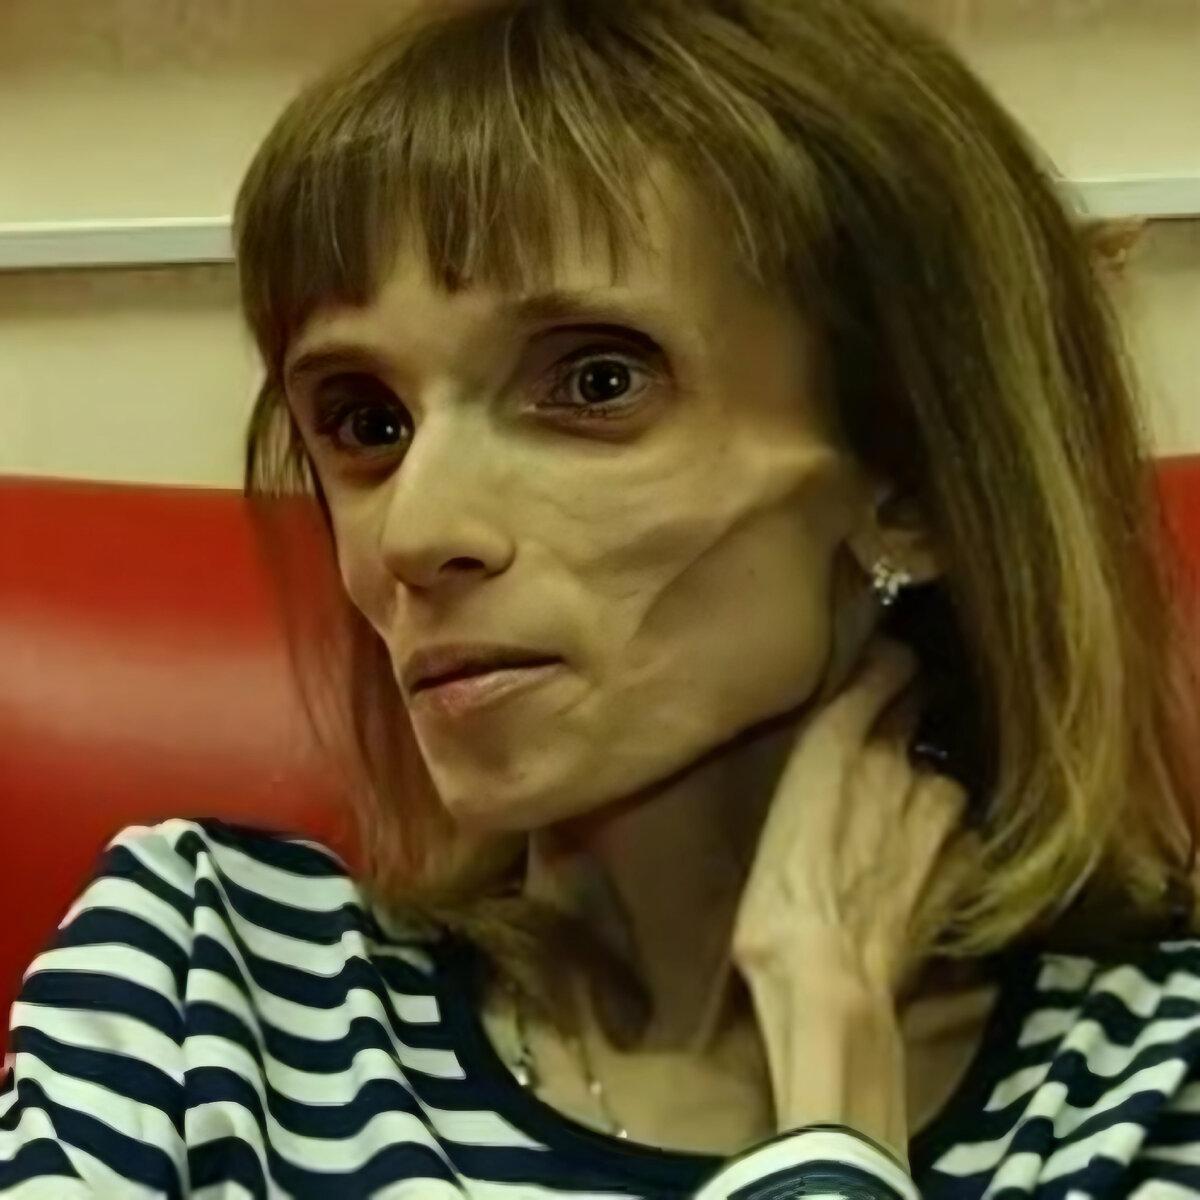 Кристина Колягина из Барнаула стала широко известна в СМИ после участия в программе "Пусть говорят". Самый низкий вес Кристины составлял всего 17 кг.-4